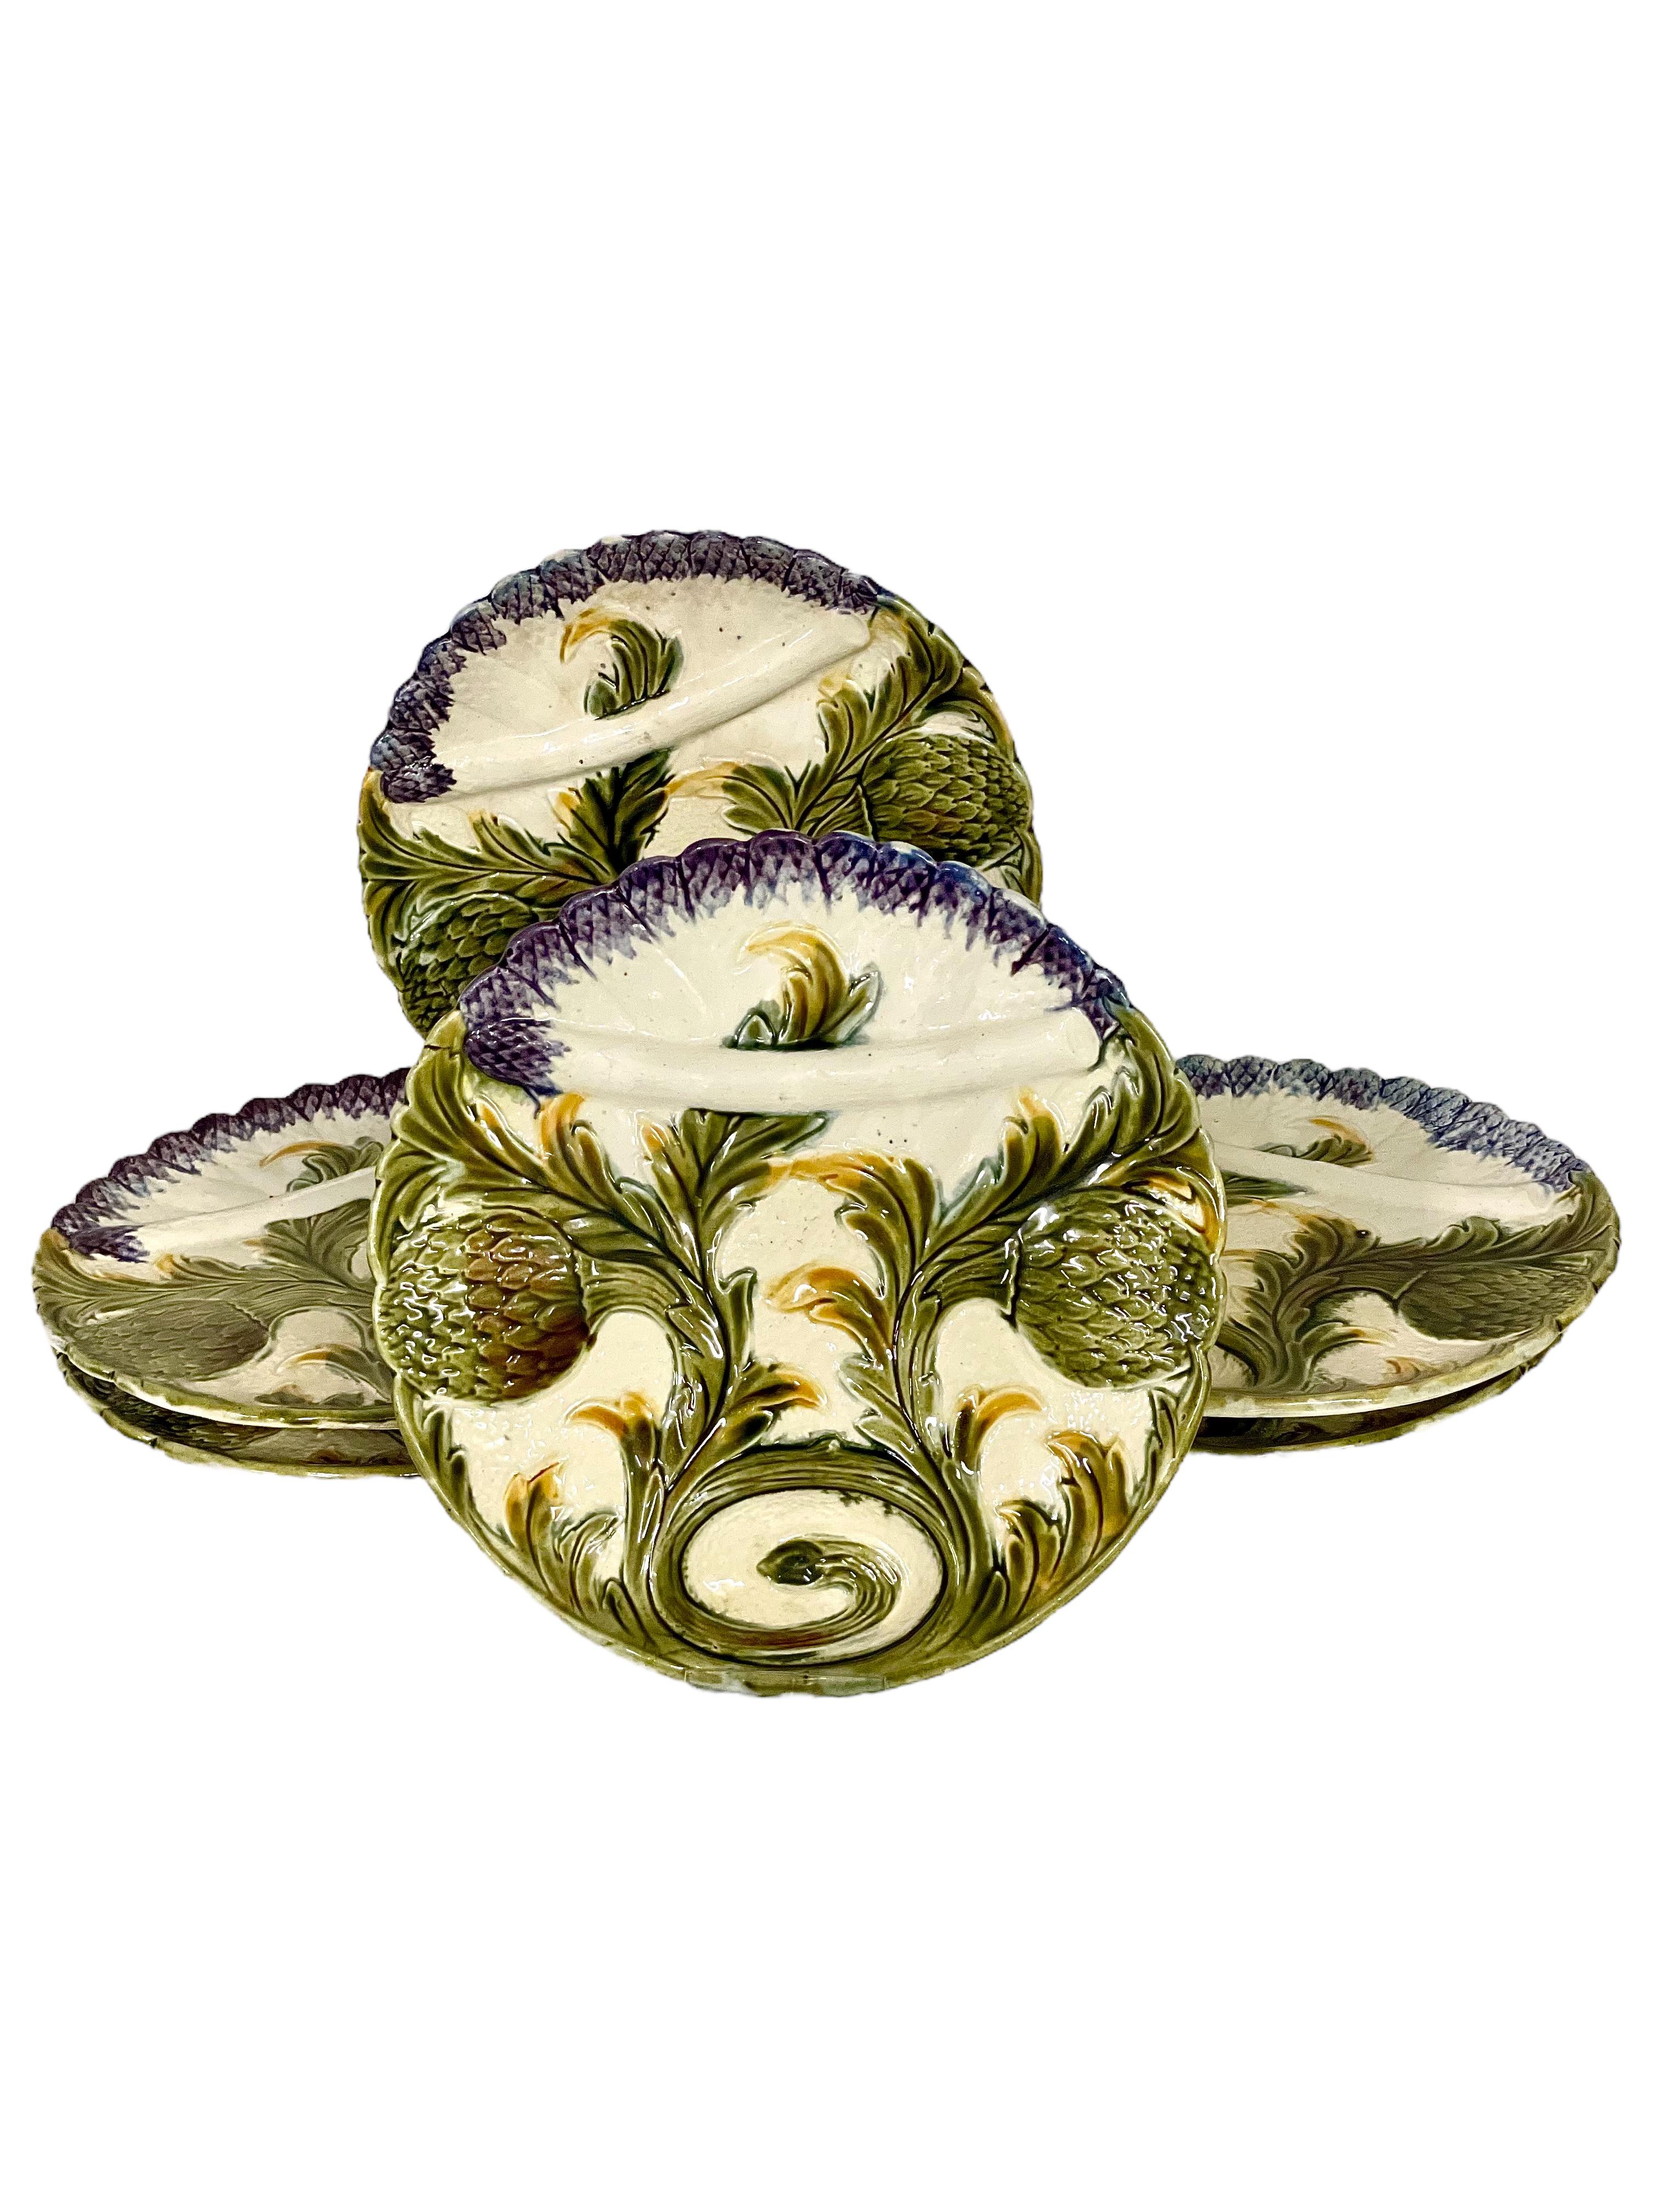 Inusual y hermoso juego de seis platos de mayólica francesa barbotina para servir espárragos, con una típica decoración en trampantojo de alcachofas y puntas de espárragos moradas, artísticamente entrelazadas entre sí para crear una agradable paleta